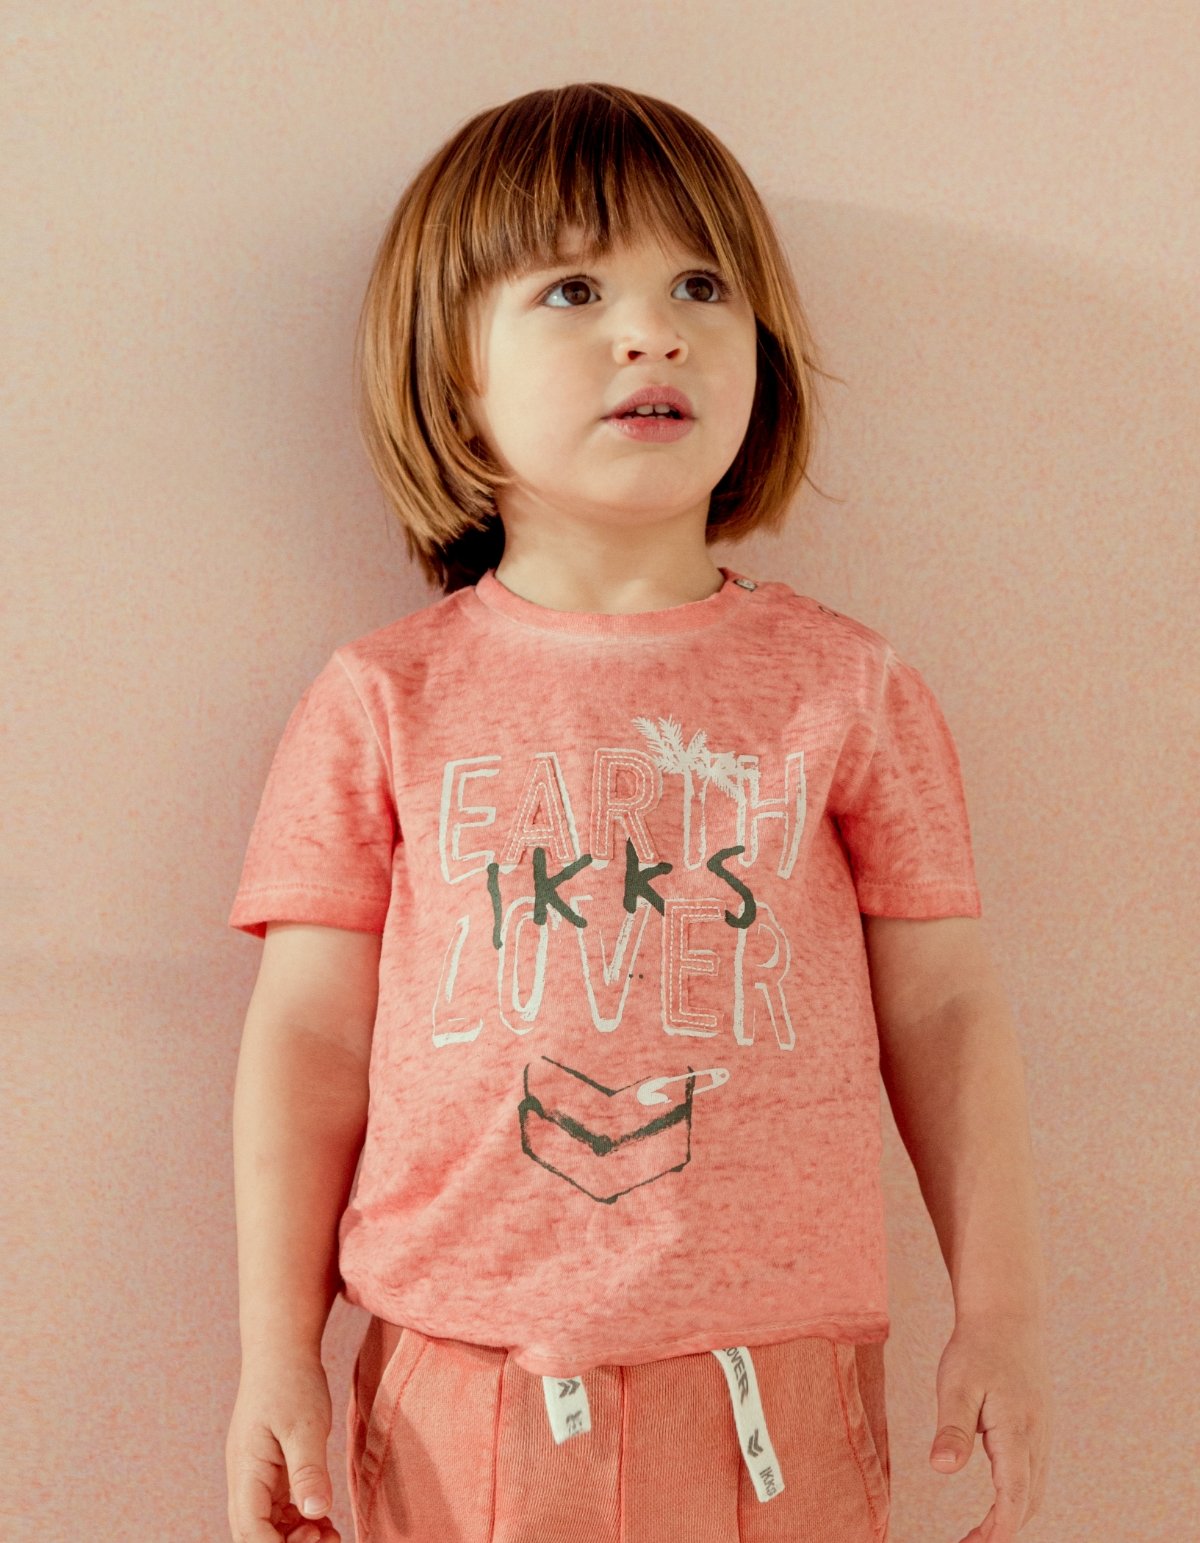 Orangefarbenes T-Shirt mit Stickerei für Babyjungen